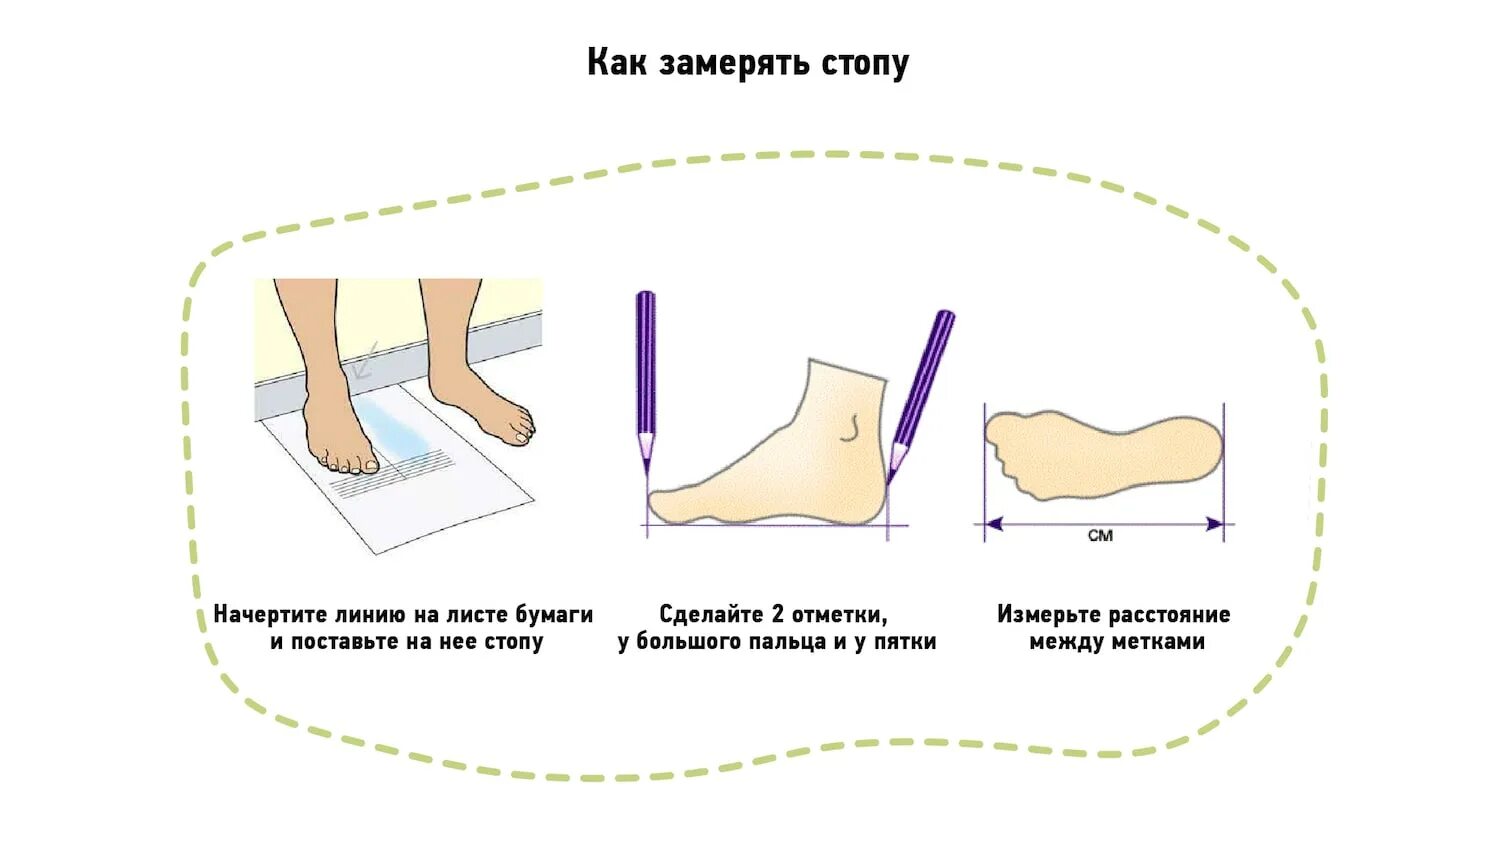 Как померить размер обуви. Измерить длину стопы правильно. Как правильно мерить длину стопы для определения размера. Ка кмерить Юлину стопы. Как правильно измерить размер стопы у ребенка.